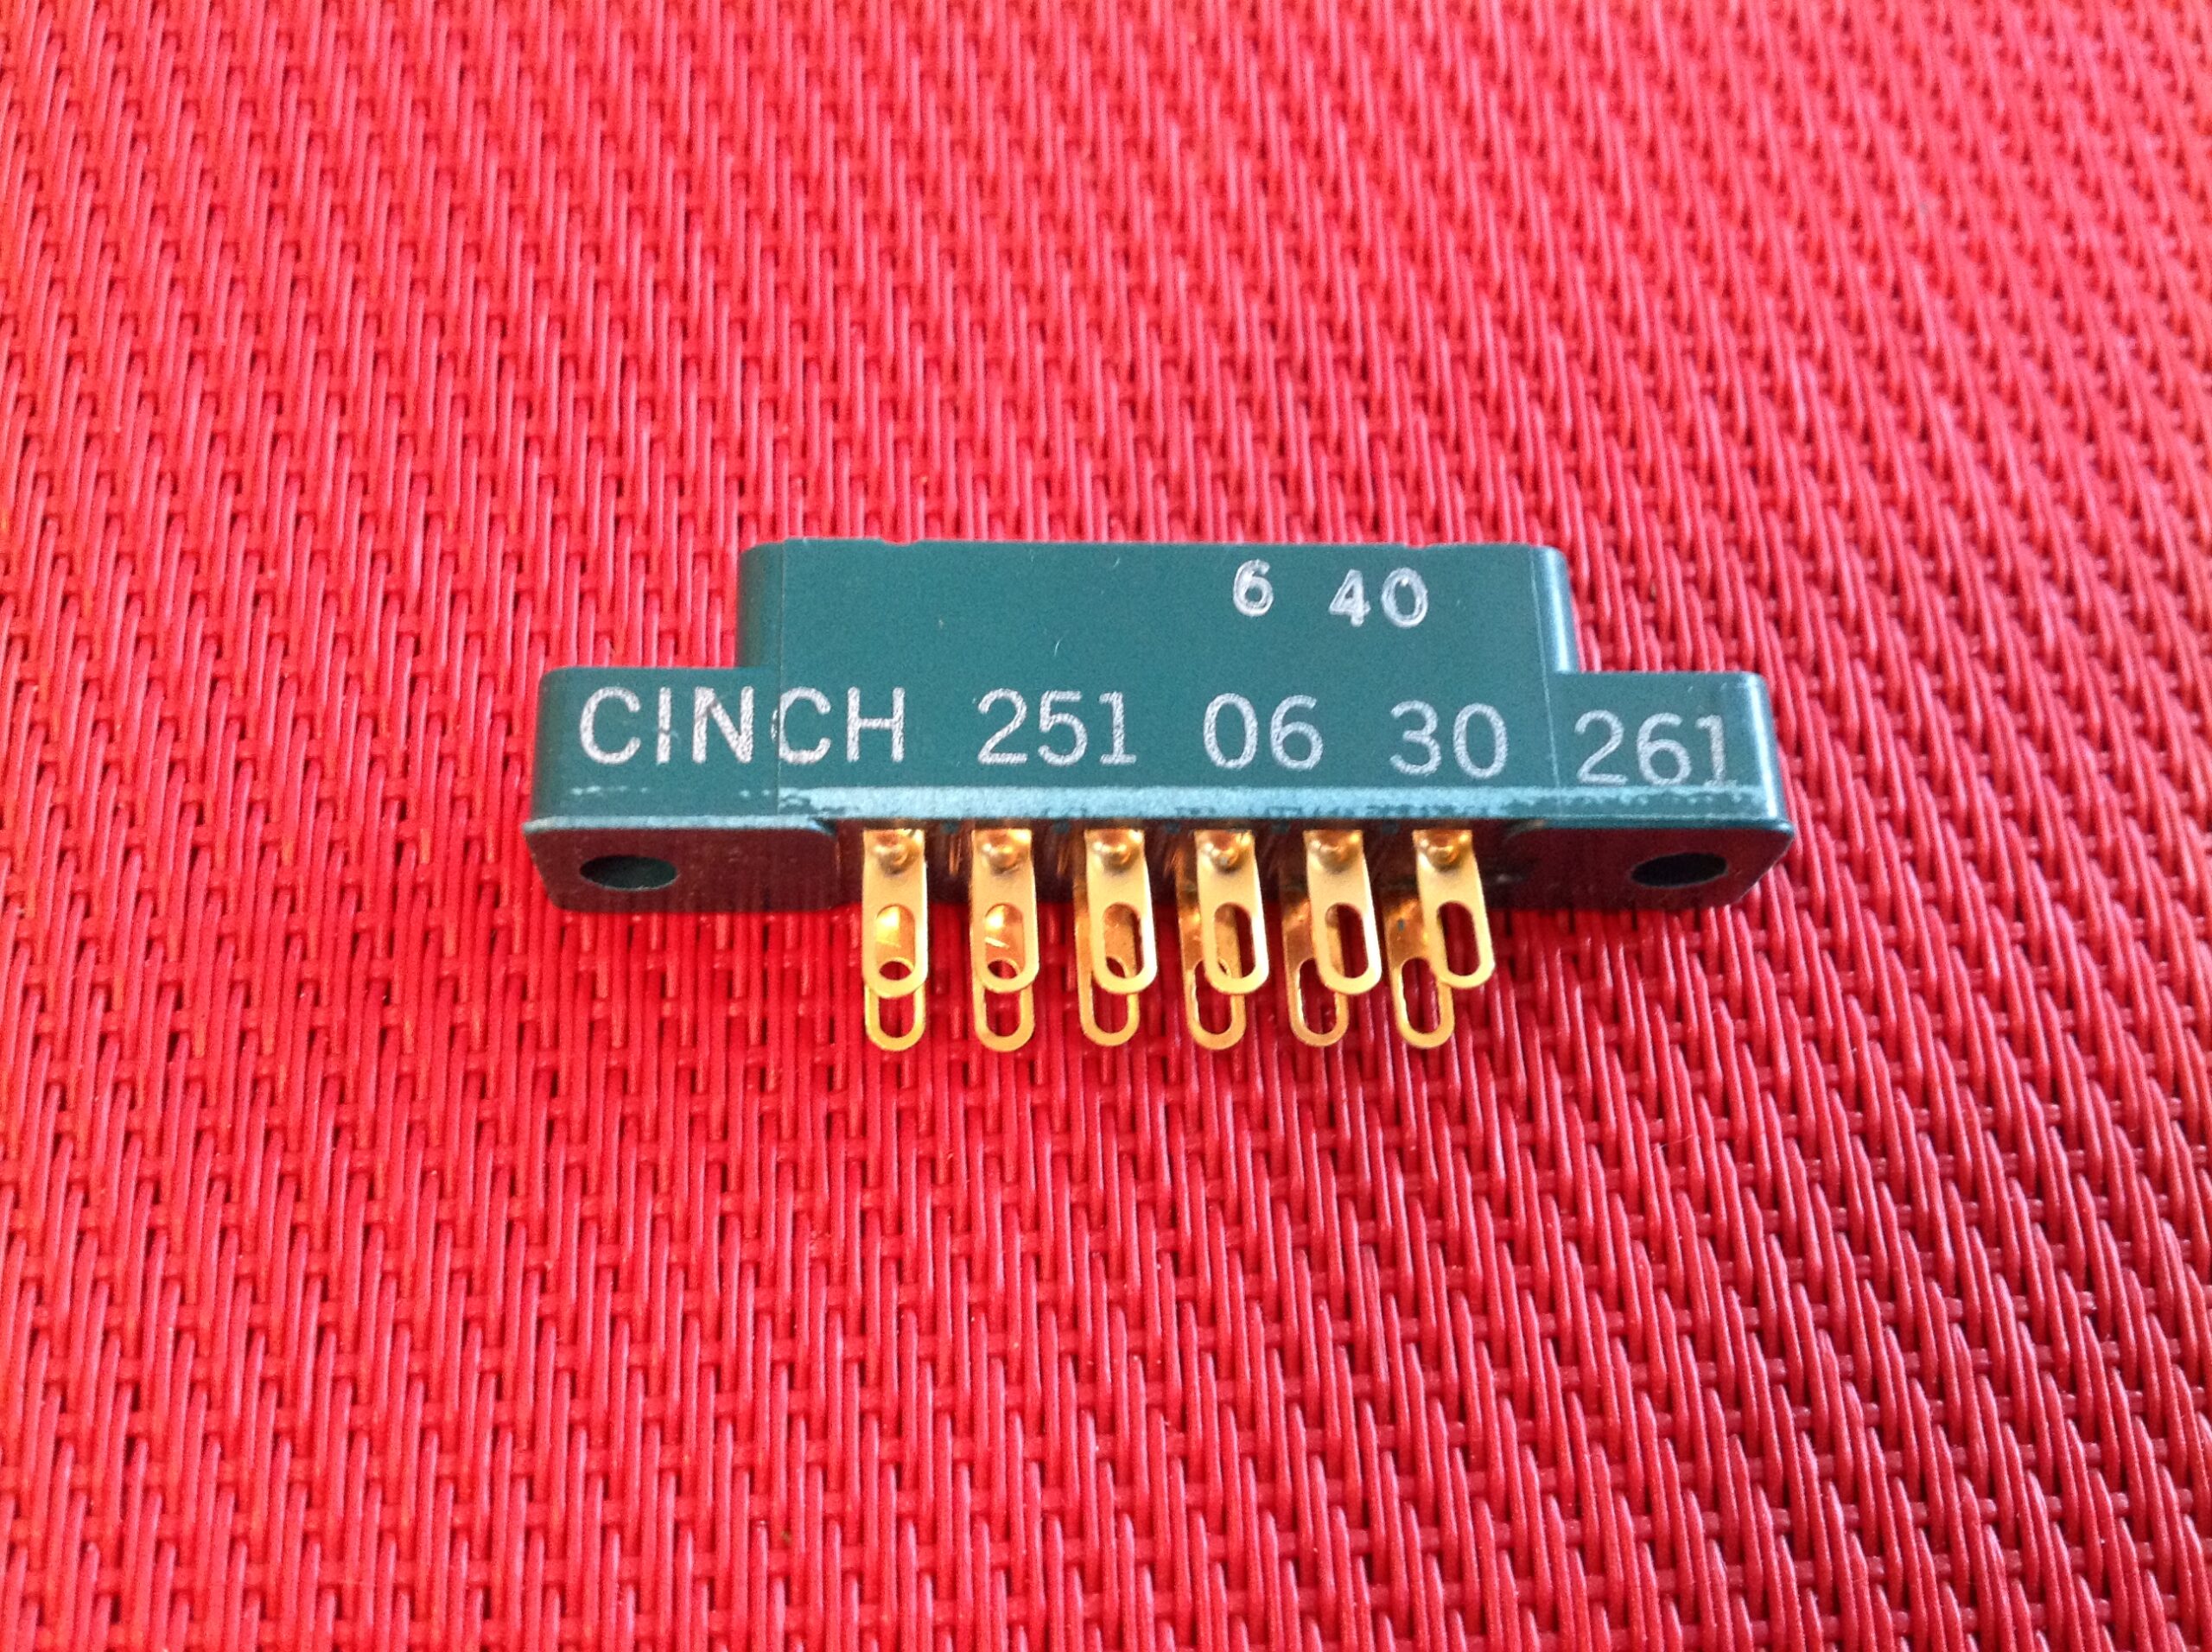 Goldsteckverbinder Chinch 251 06 30 261 weiblich 12 pol.